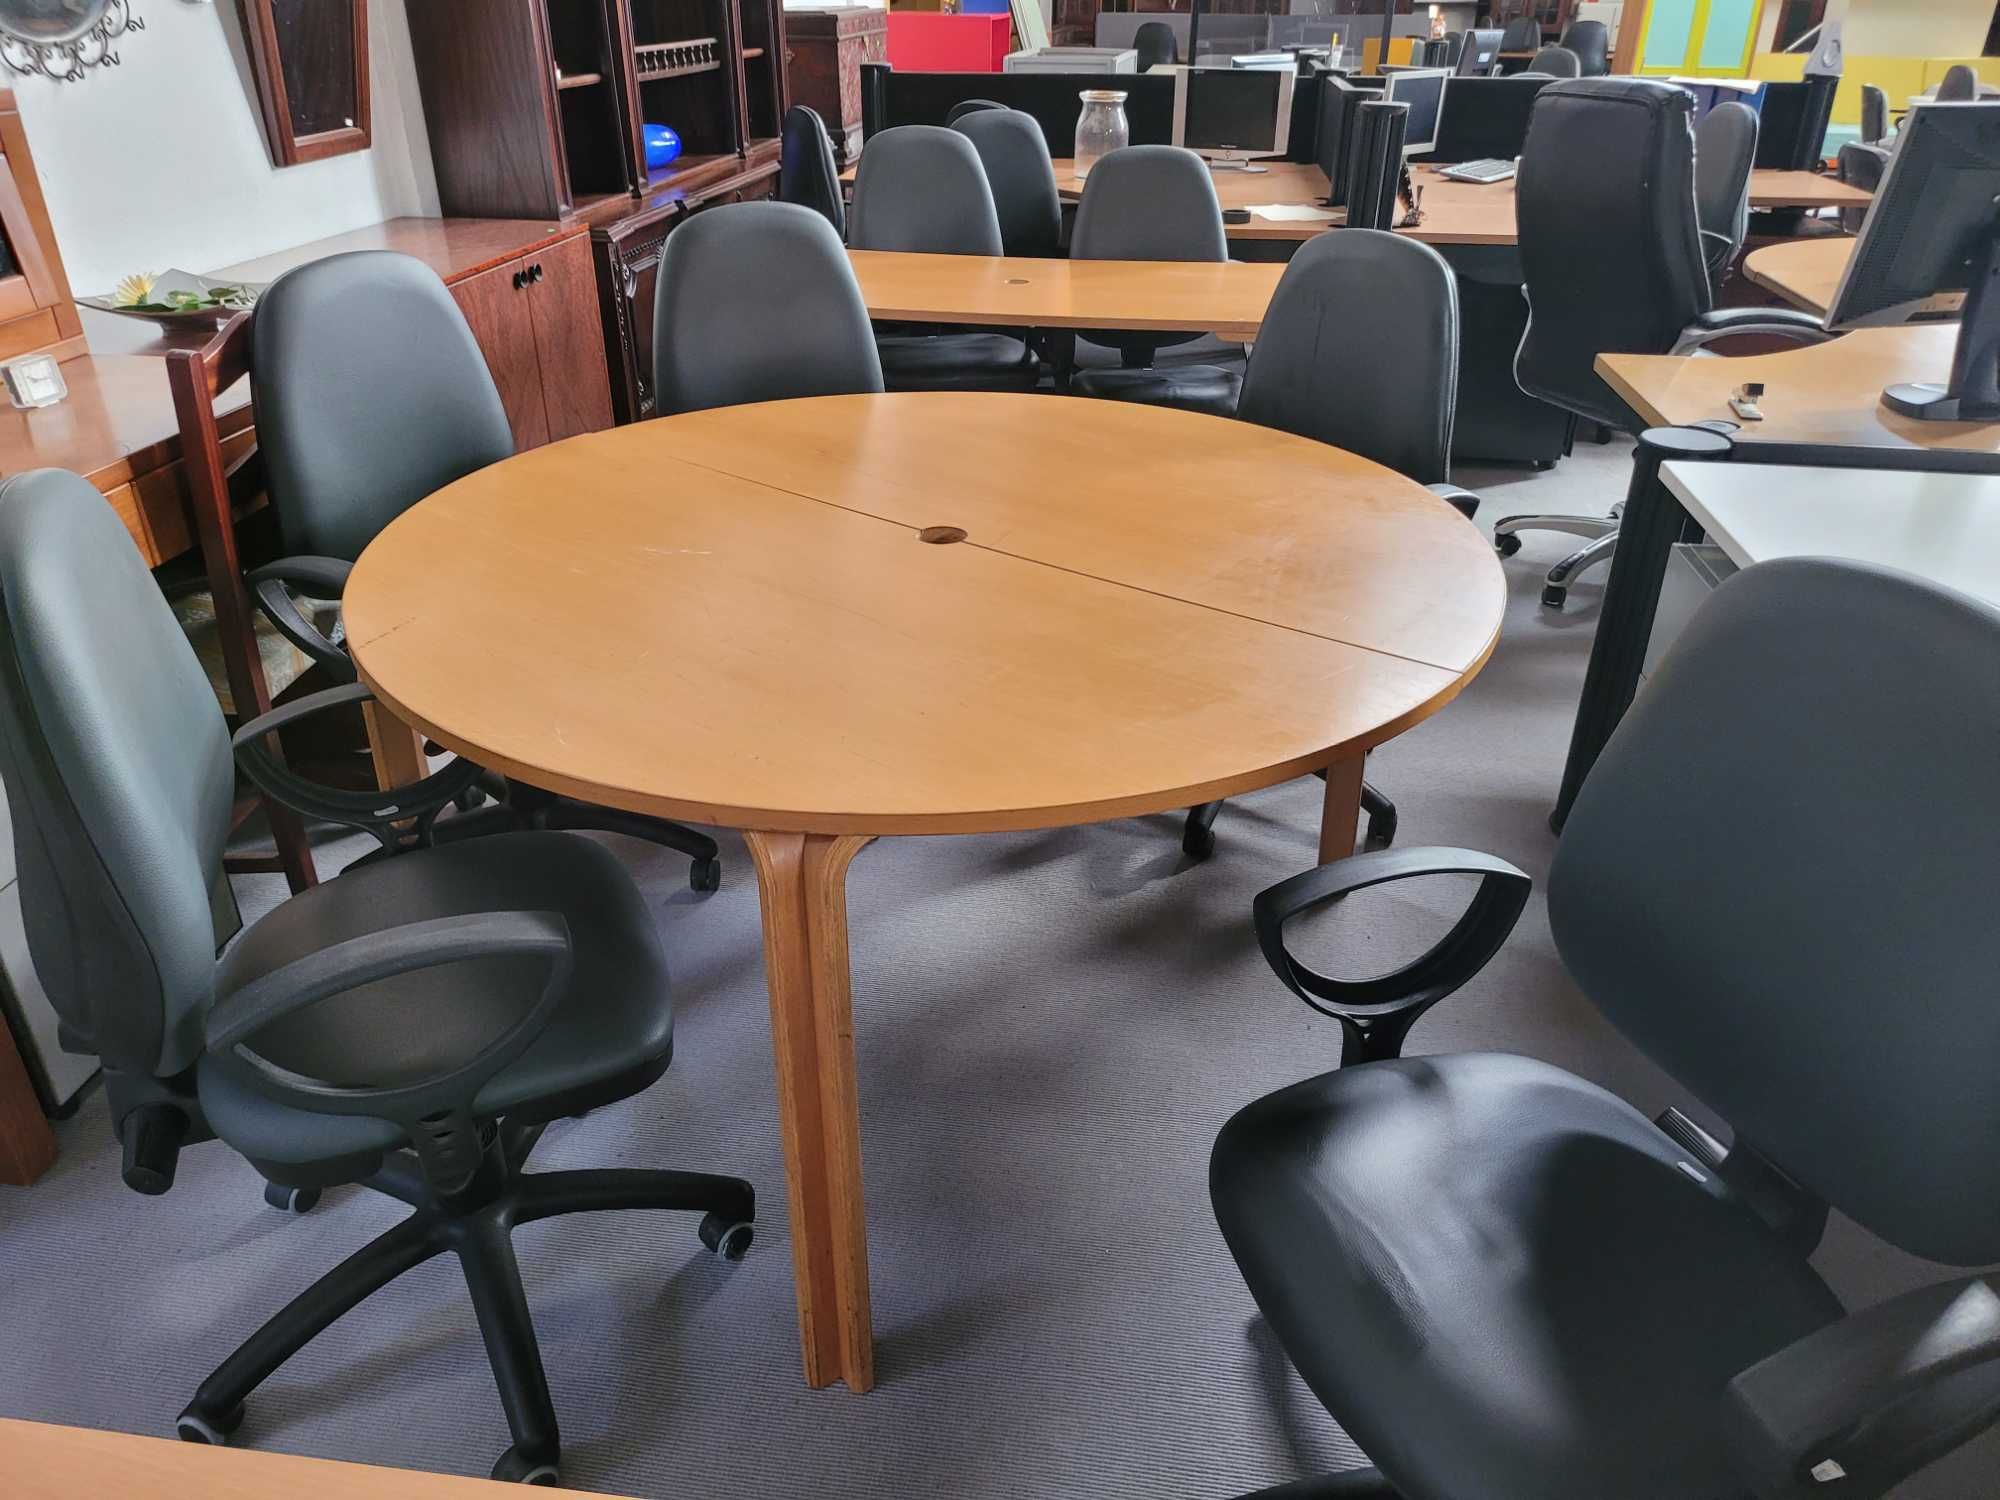 Mesa de reunião em madeira - Bom estado geral, apenas umas